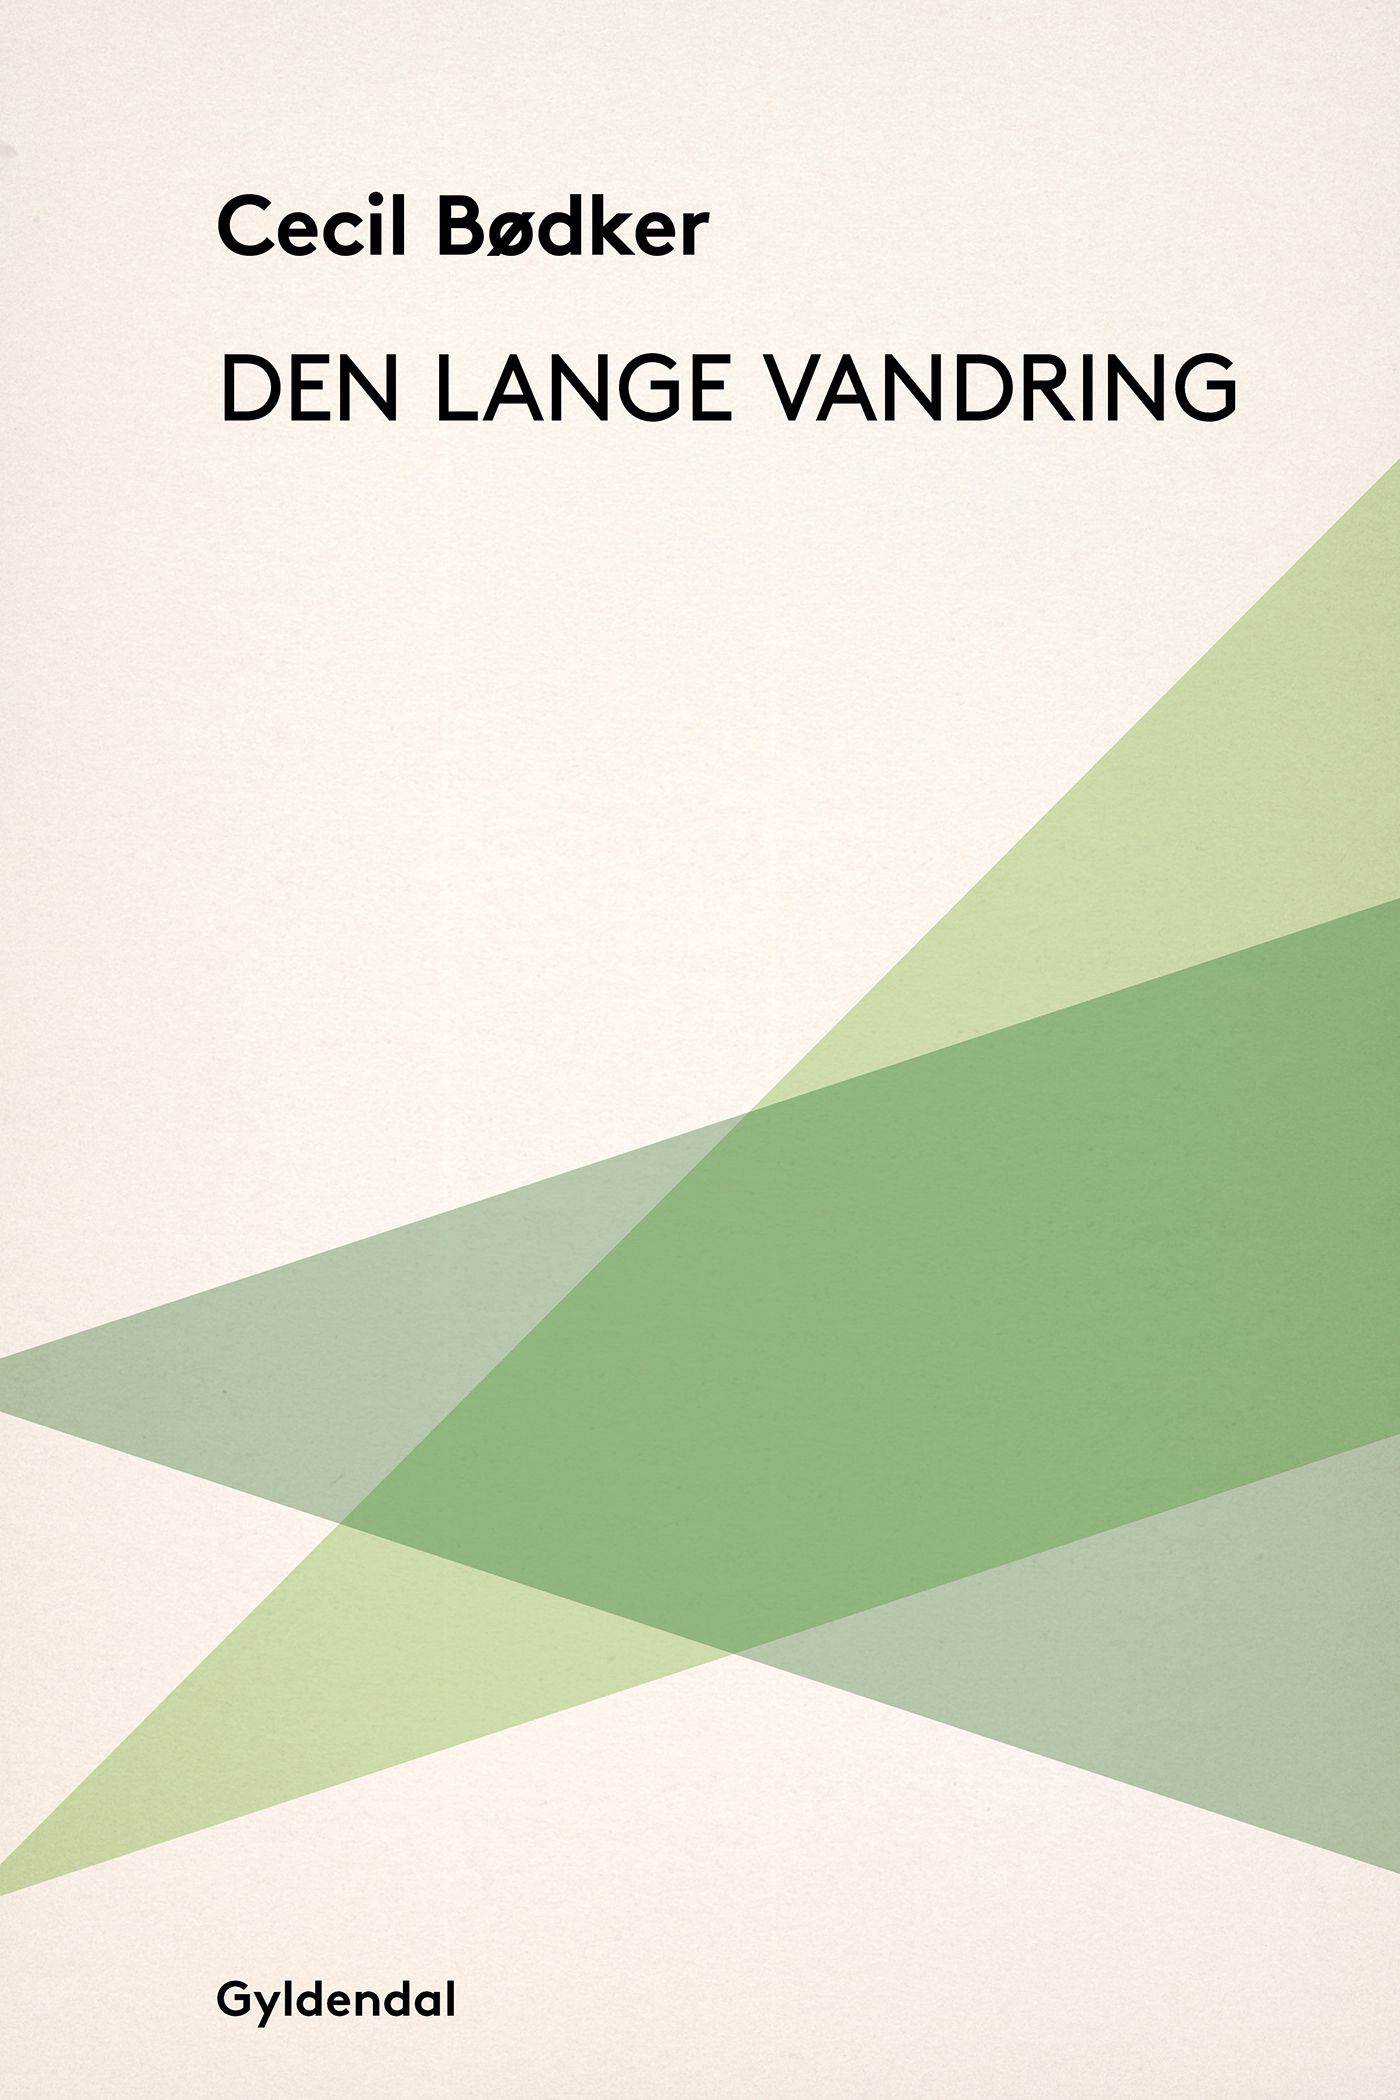 Den lange vandring, eBook by Cecil Bødker